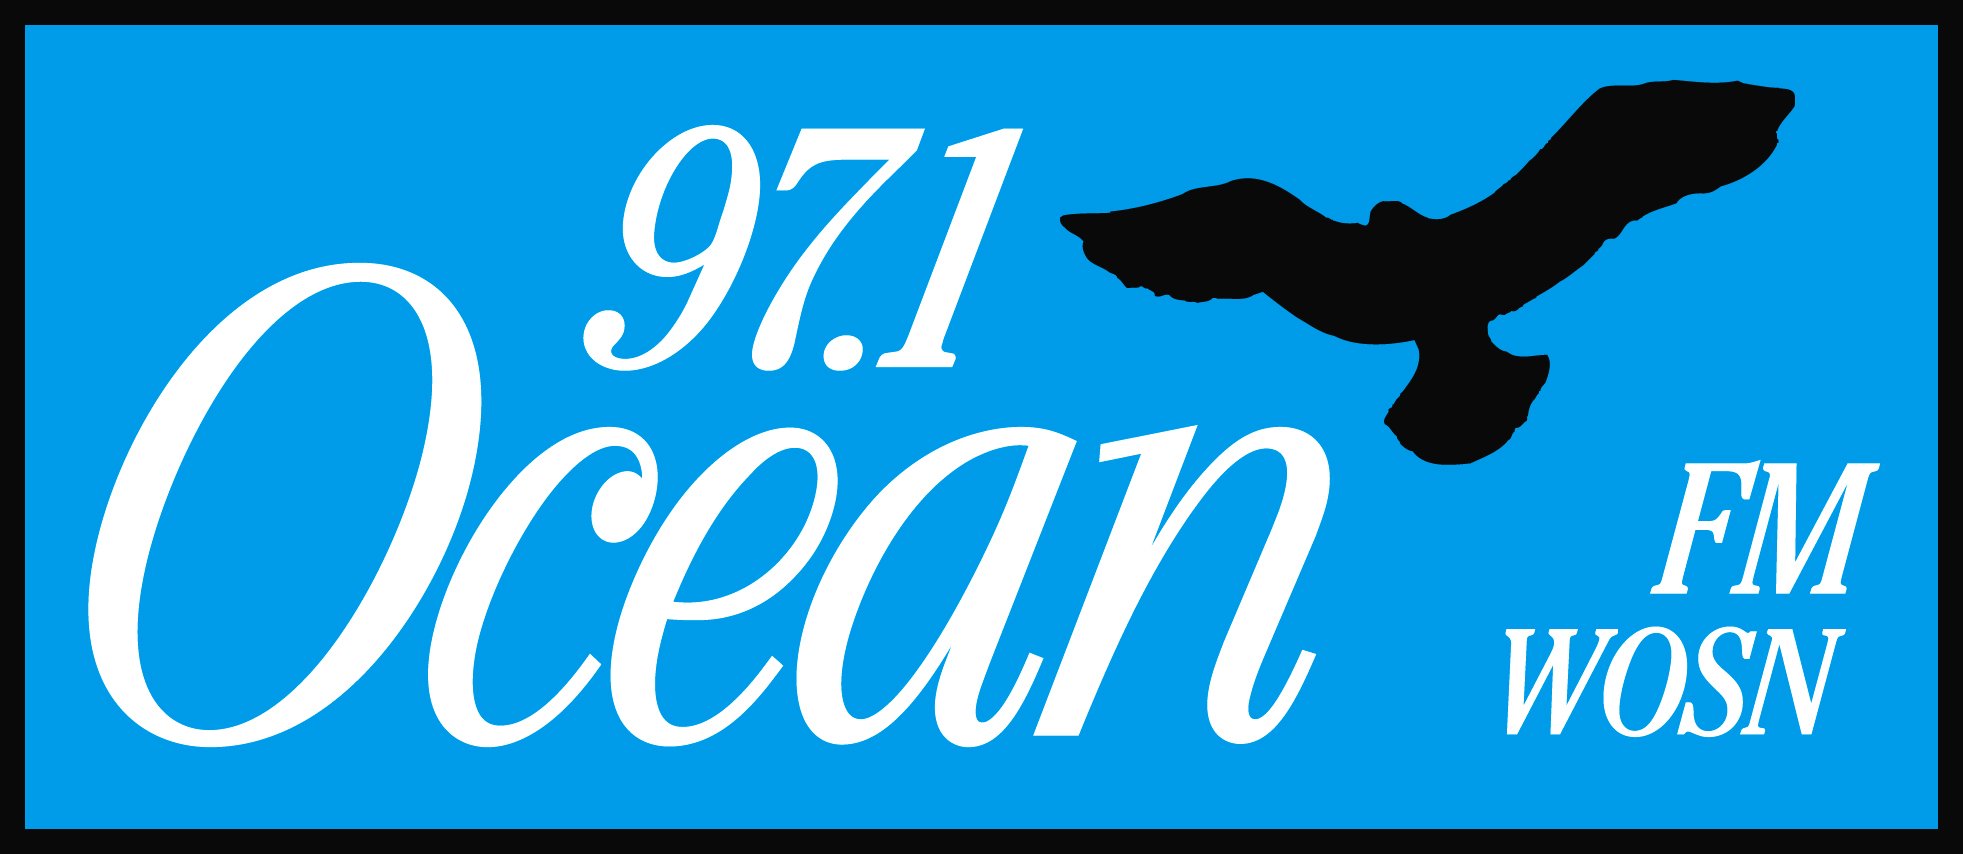 97.1 Ocean FM-Logo.jpg